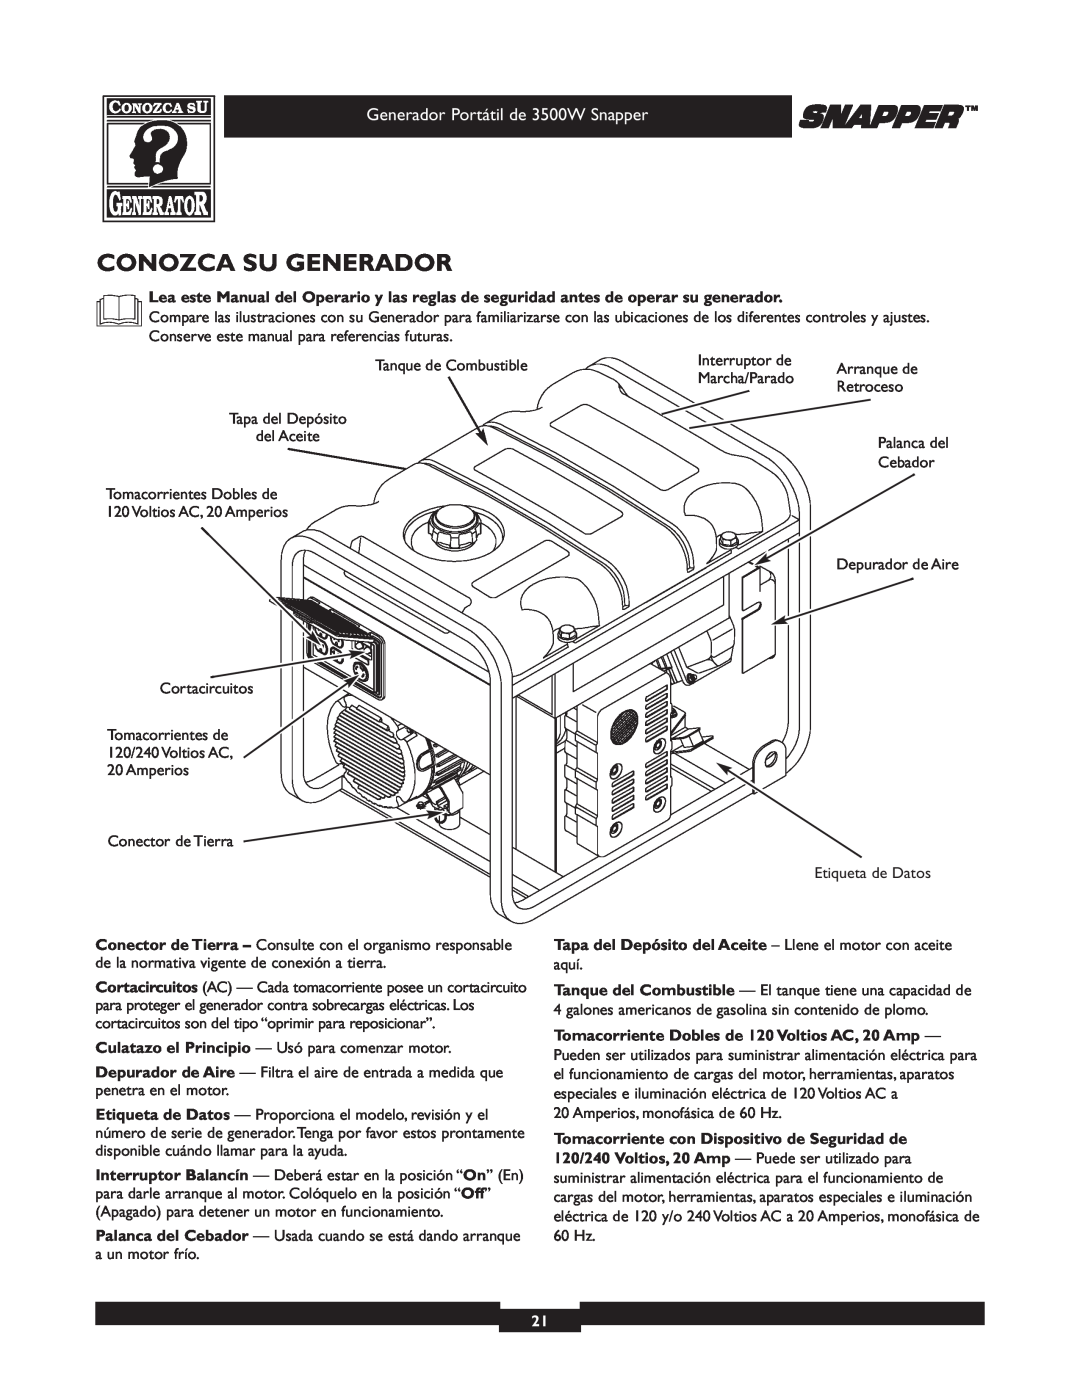 Snapper manual Conozca Su Generador, Generador Portátil de 3500W Snapper, Tomacorriente Dobles de 120 Voltios AC, 20 Amp 